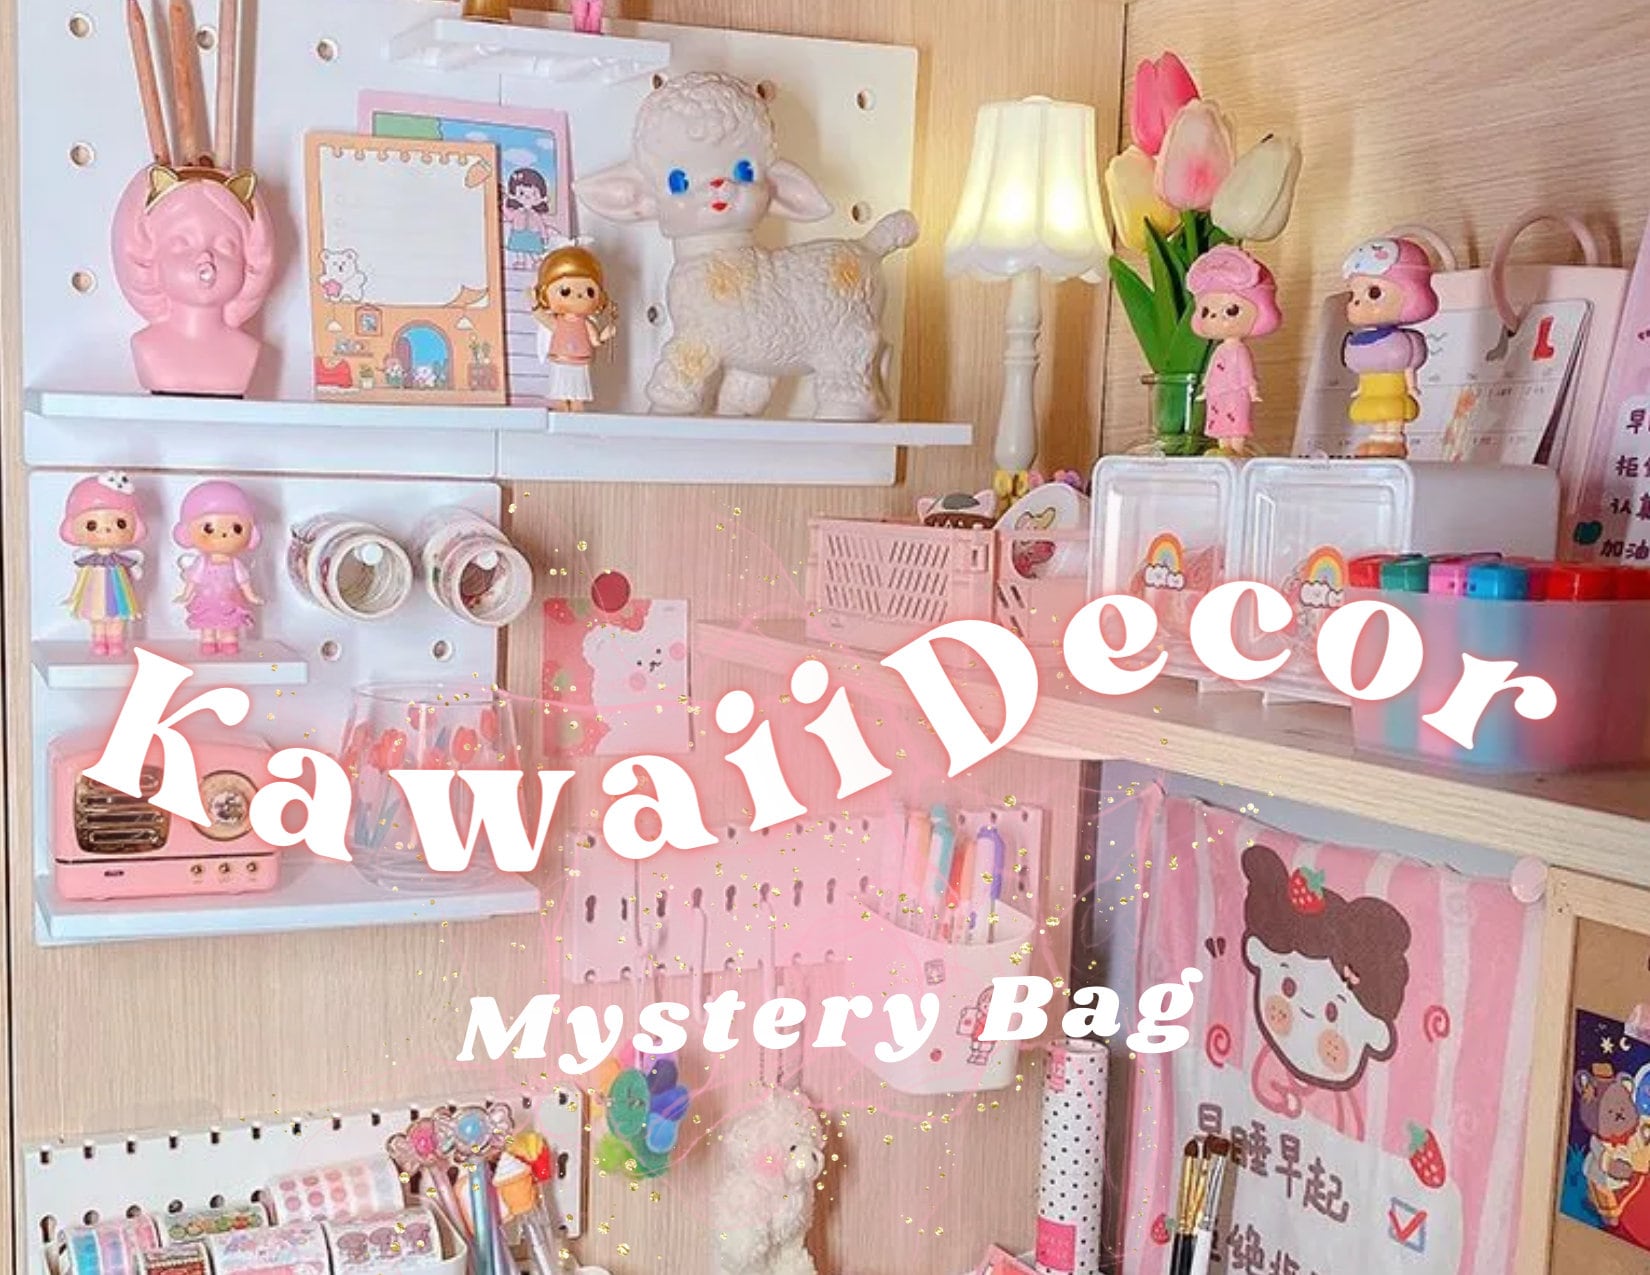 Kawaii Decor Mystery Bag, Soft Girl Aesthetic Room Decor